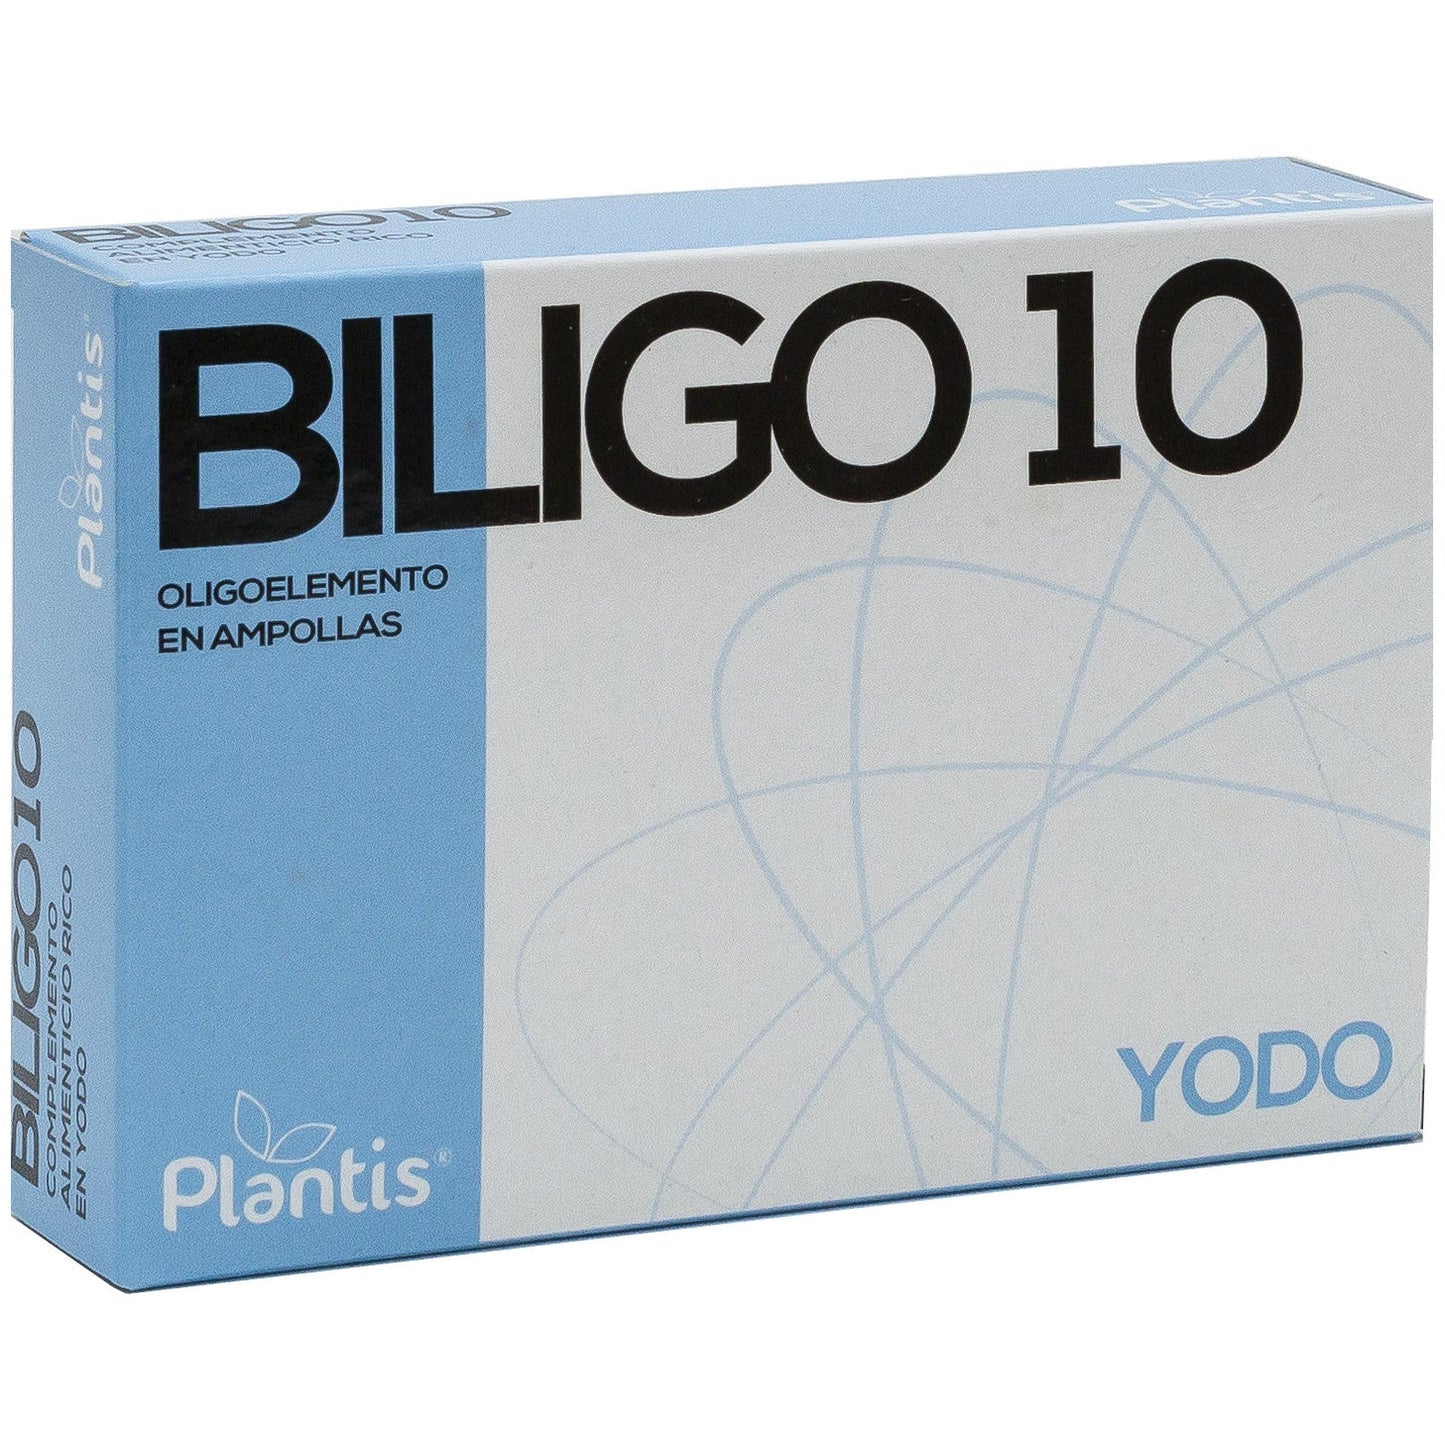 Biligo-10 20 ampollas | Artesania Agricola - Dietetica Ferrer